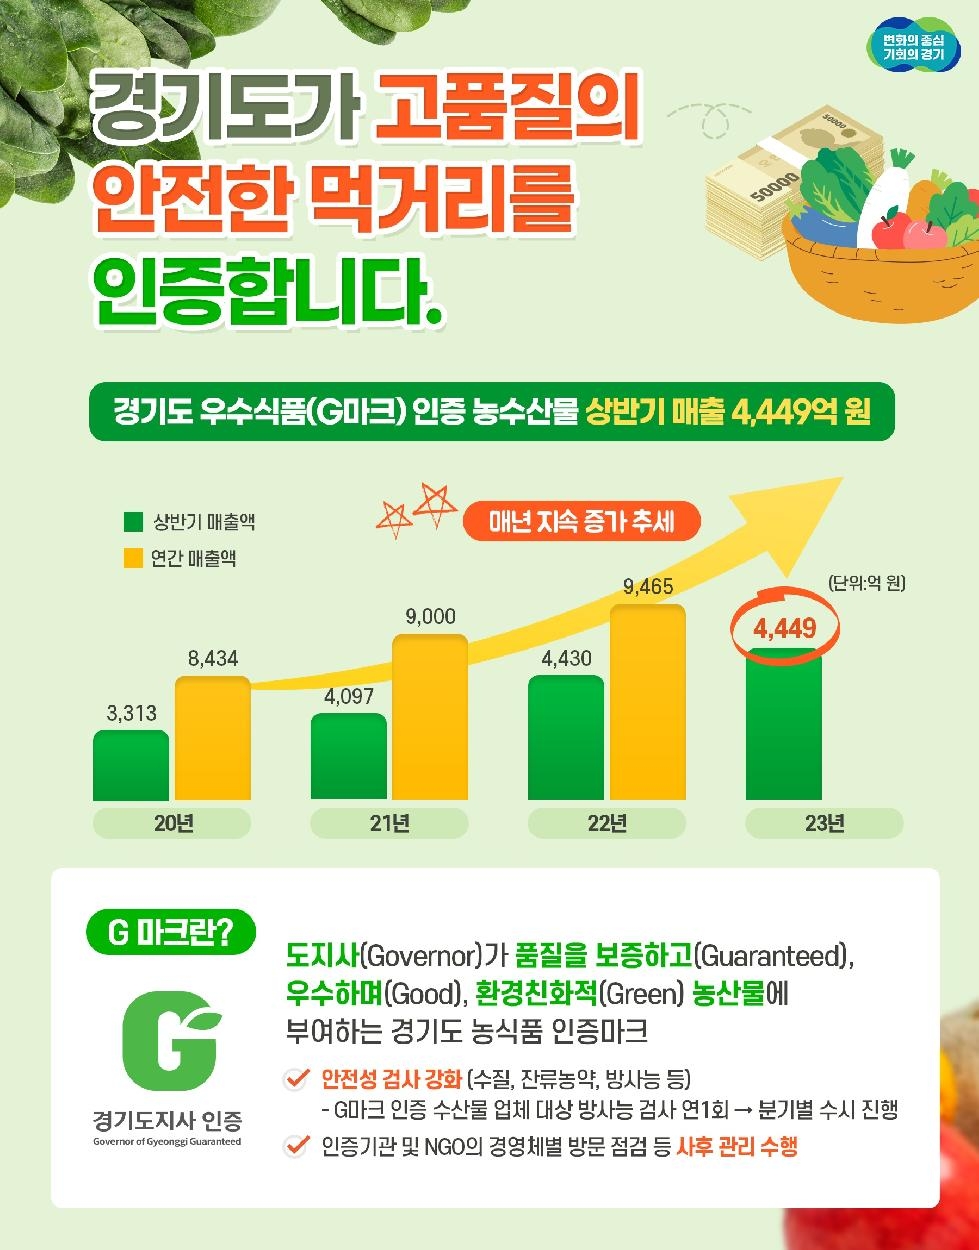 경기도,경기도 우수식품(G마크) 인증 농수산물 상반기 매출 4,449억 